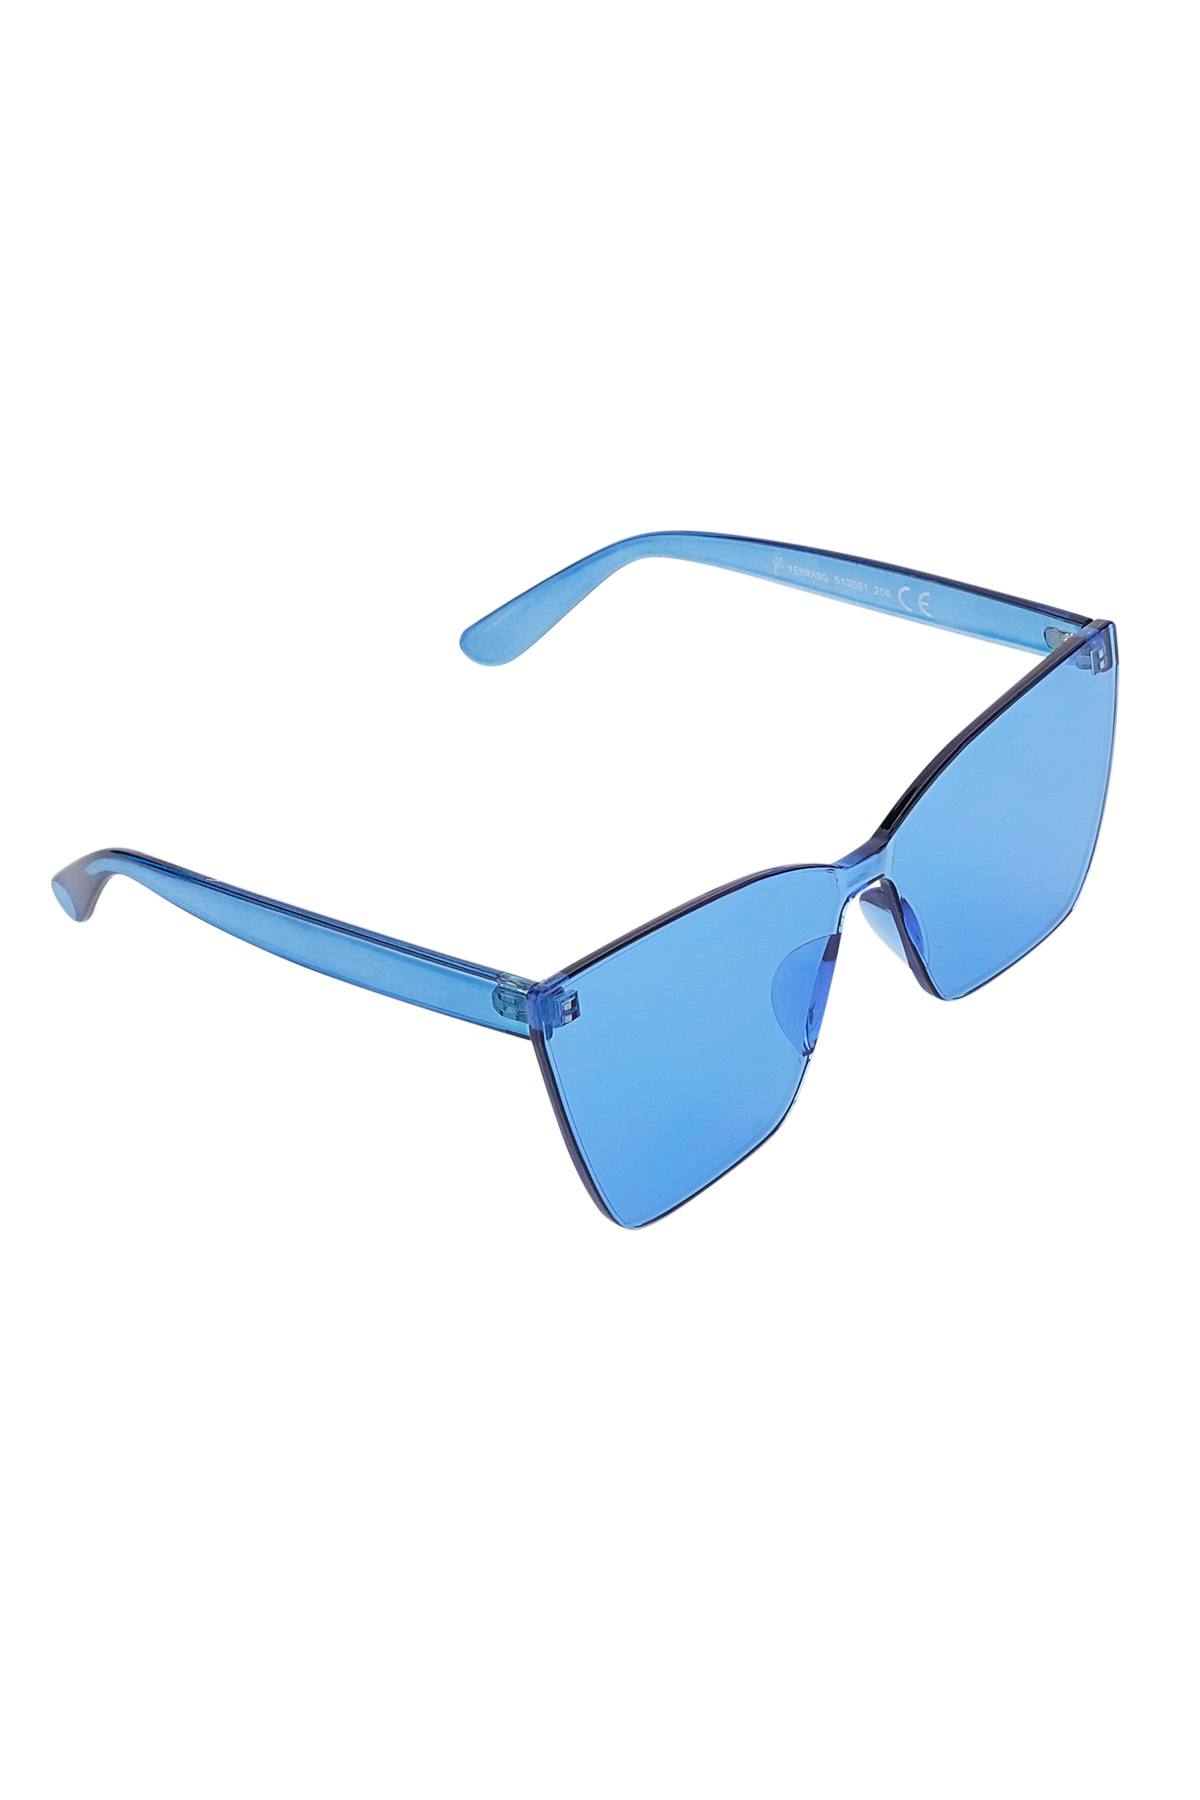 Eenkleurige daily zonnebril - blauw